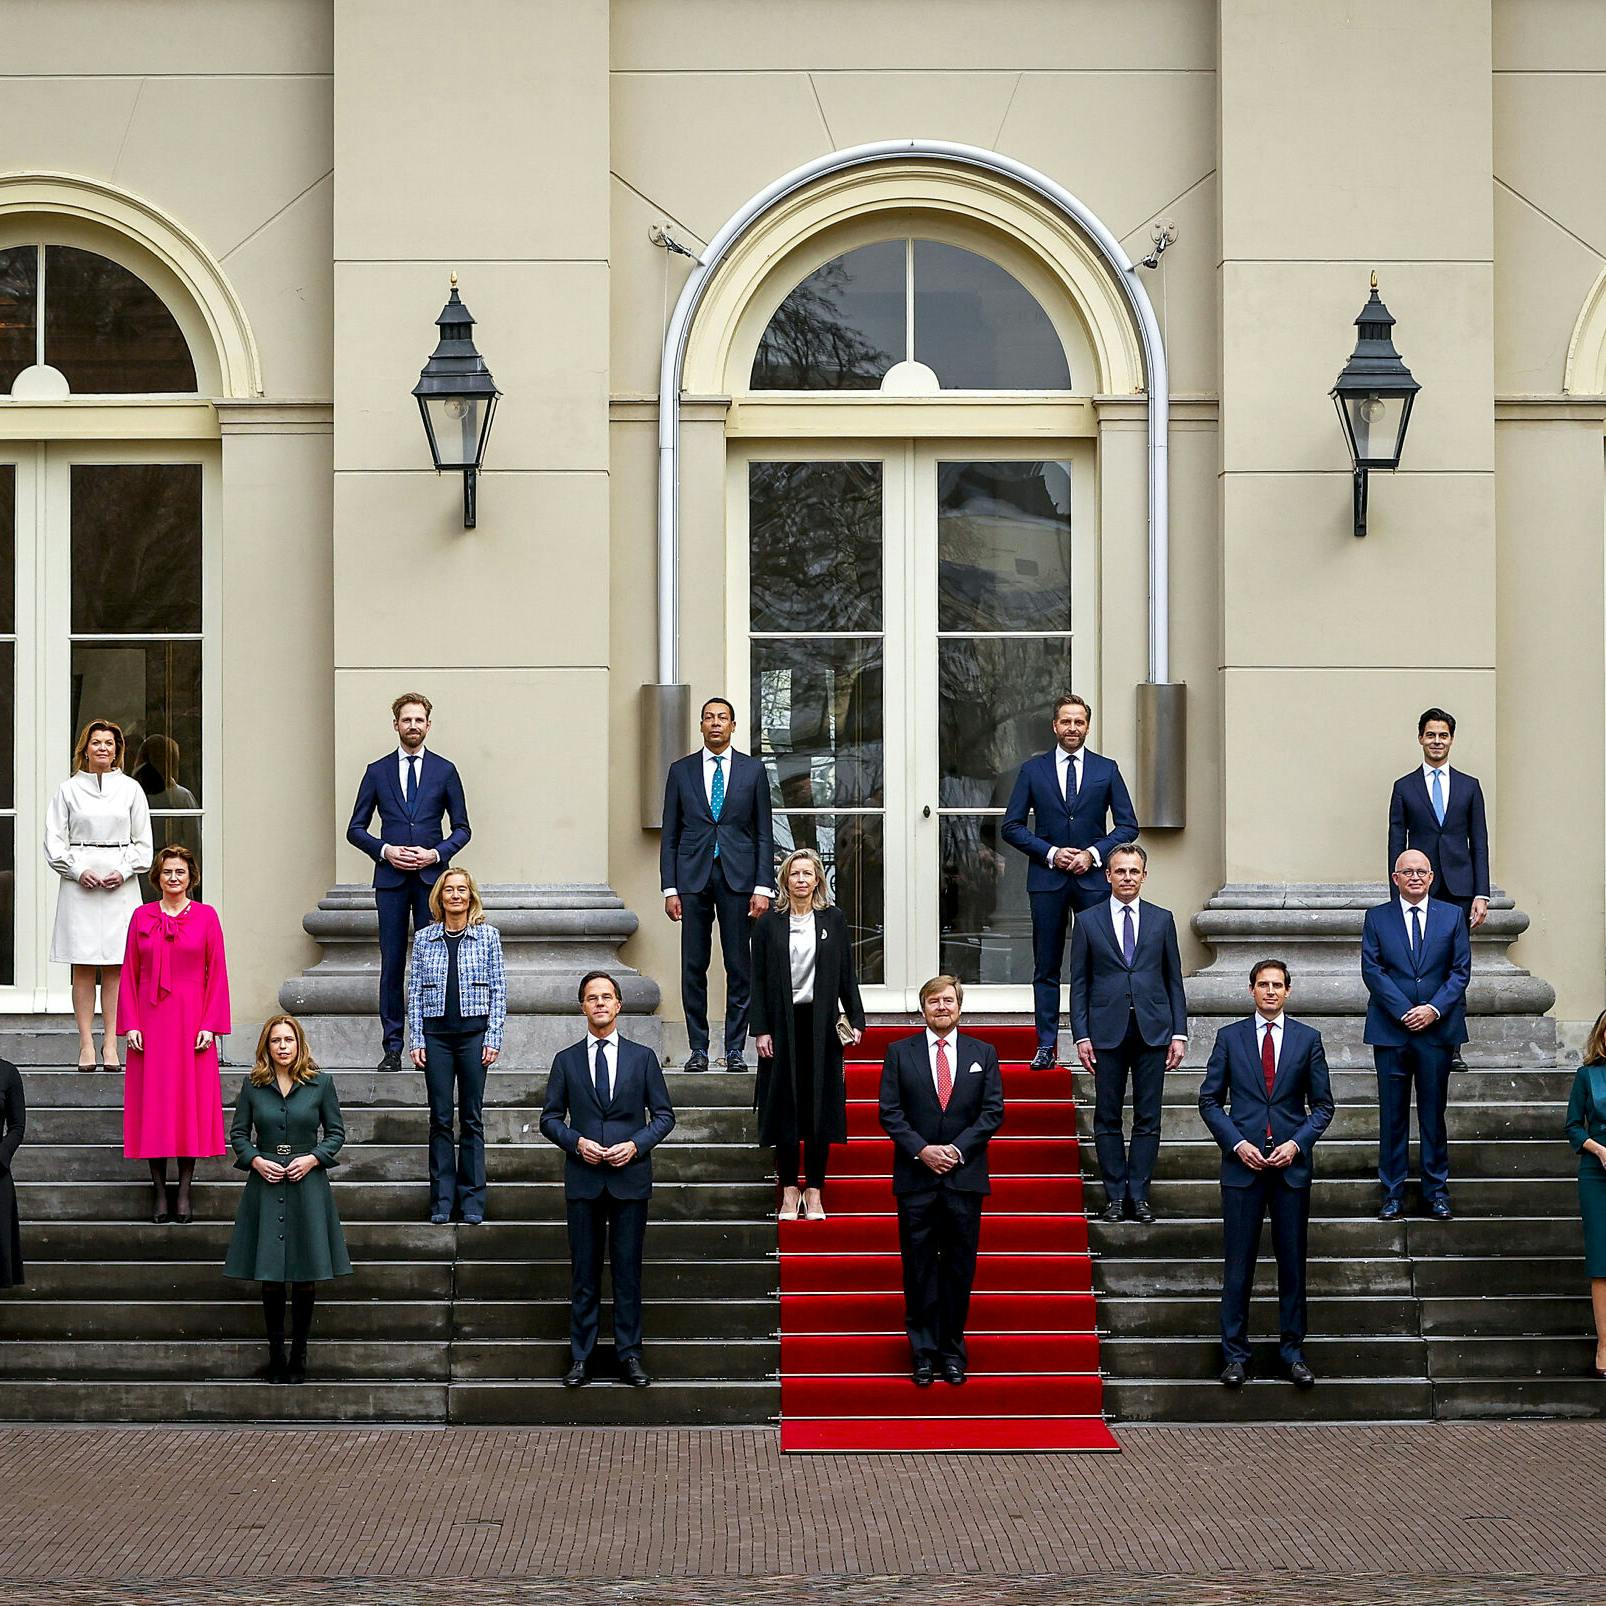 Nederland heeft weer een missionair kabinet